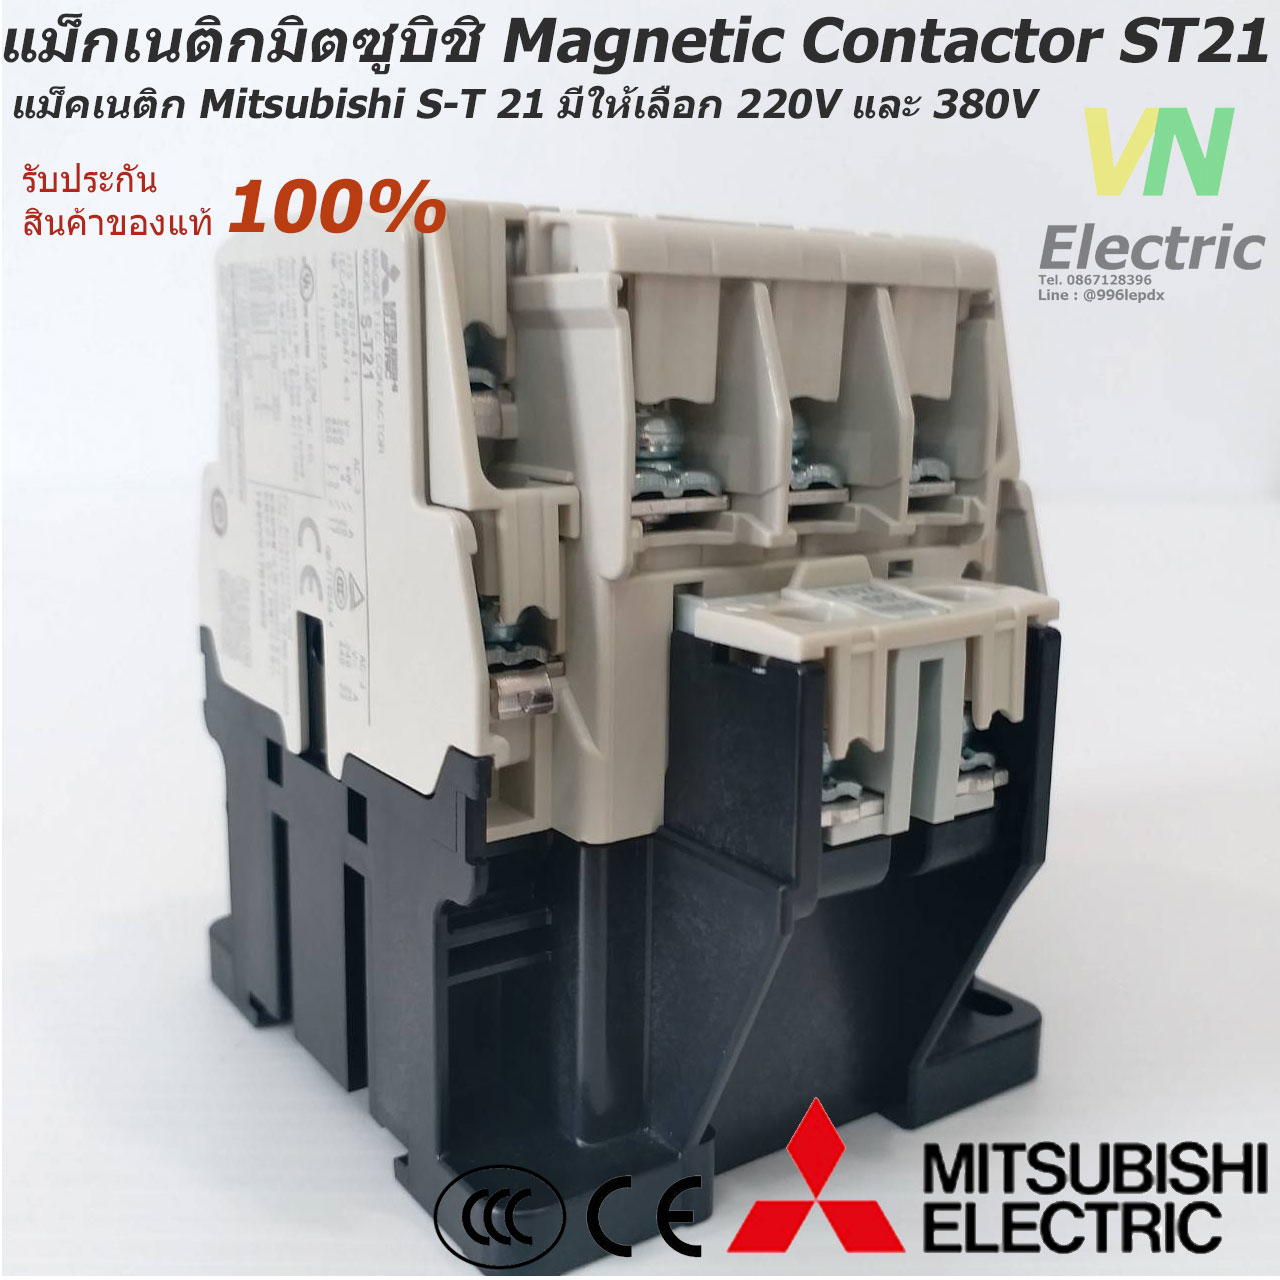 แม็กเนติกมิตซูบิชิ MITSUBISHI Magnetic Contactor S-T 21 220V-380V แม็คเนติก  ตัวเลือก คอยล์ 220 V.